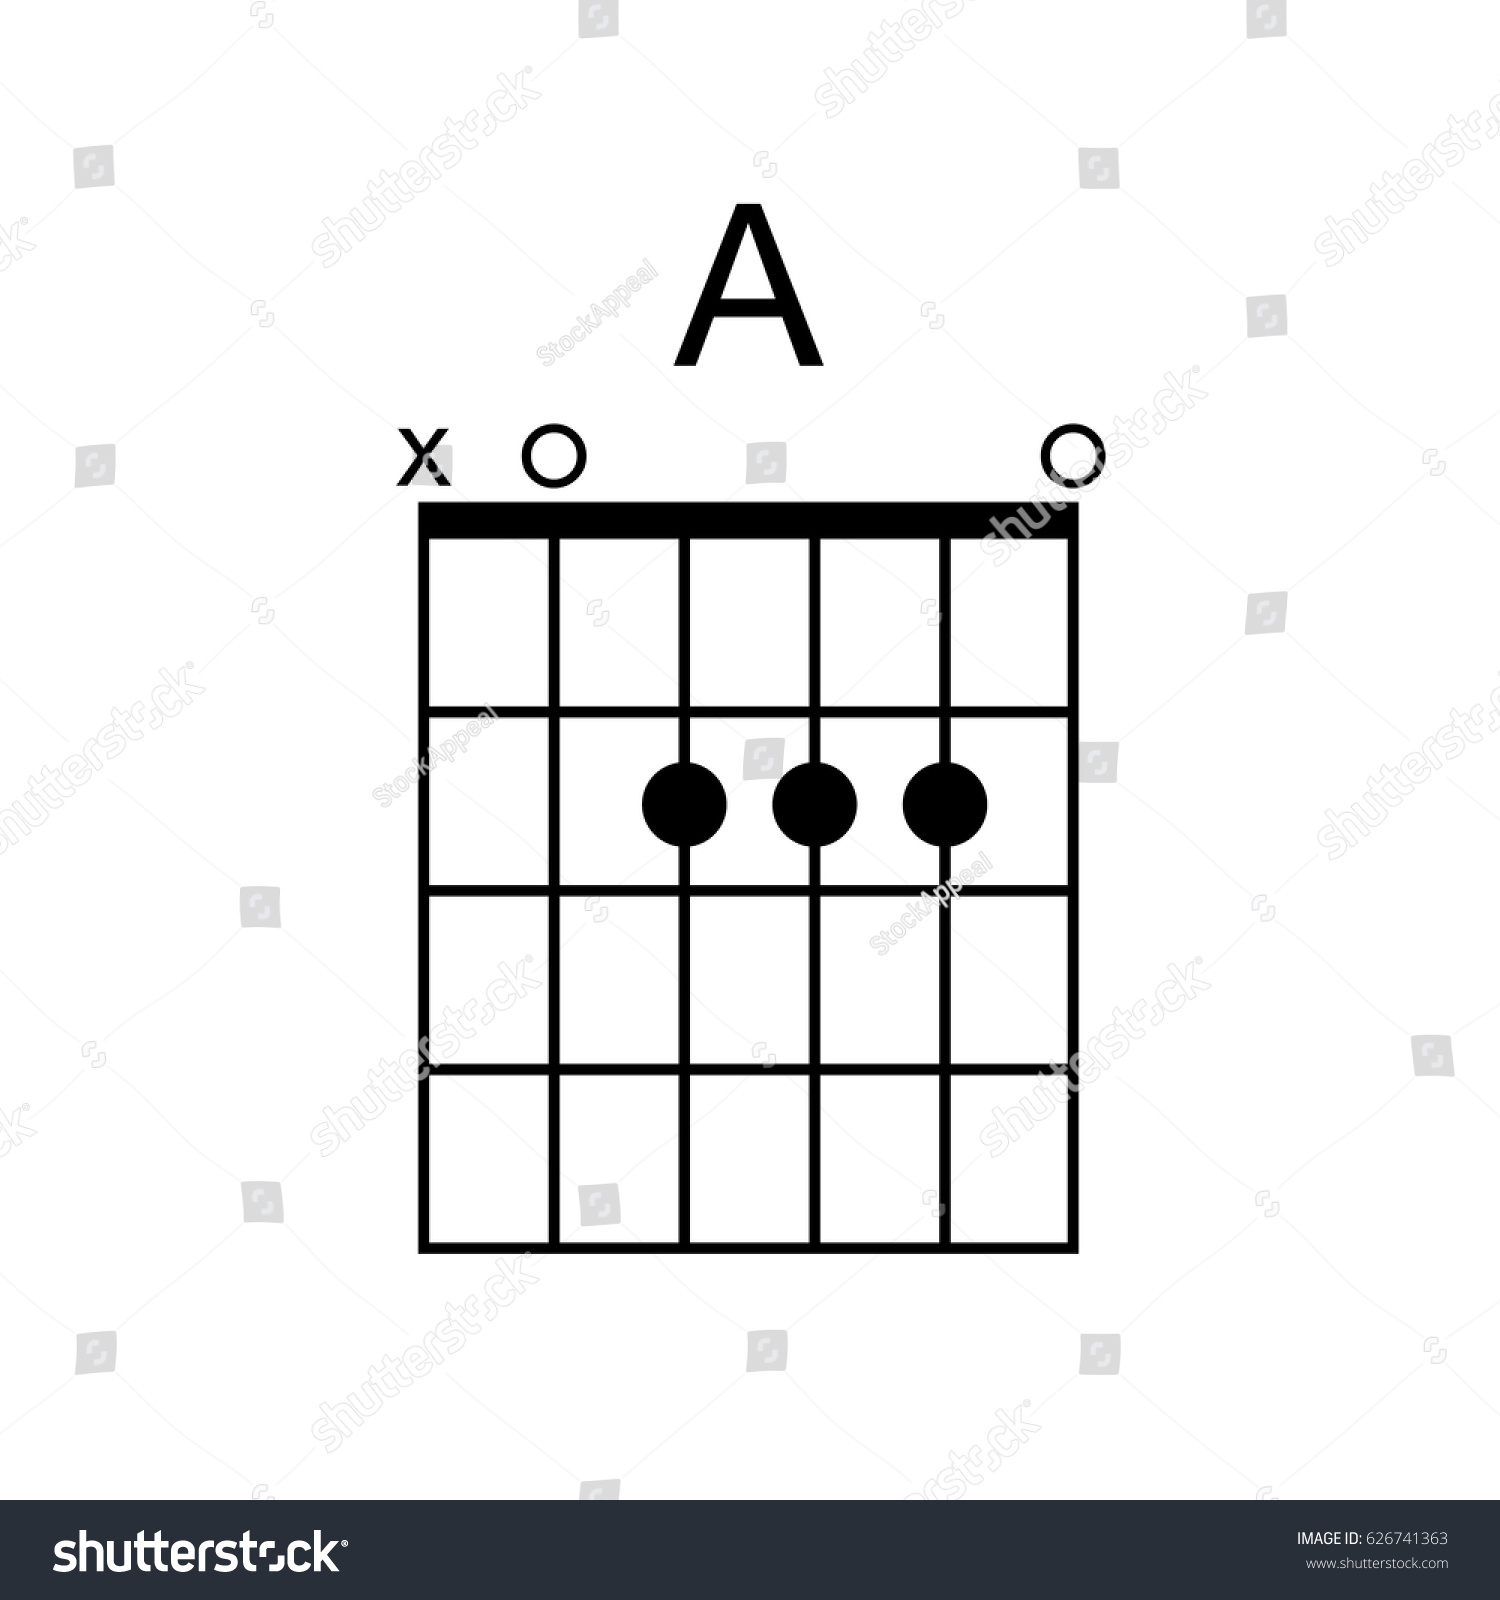 Guitar Chord Chart App